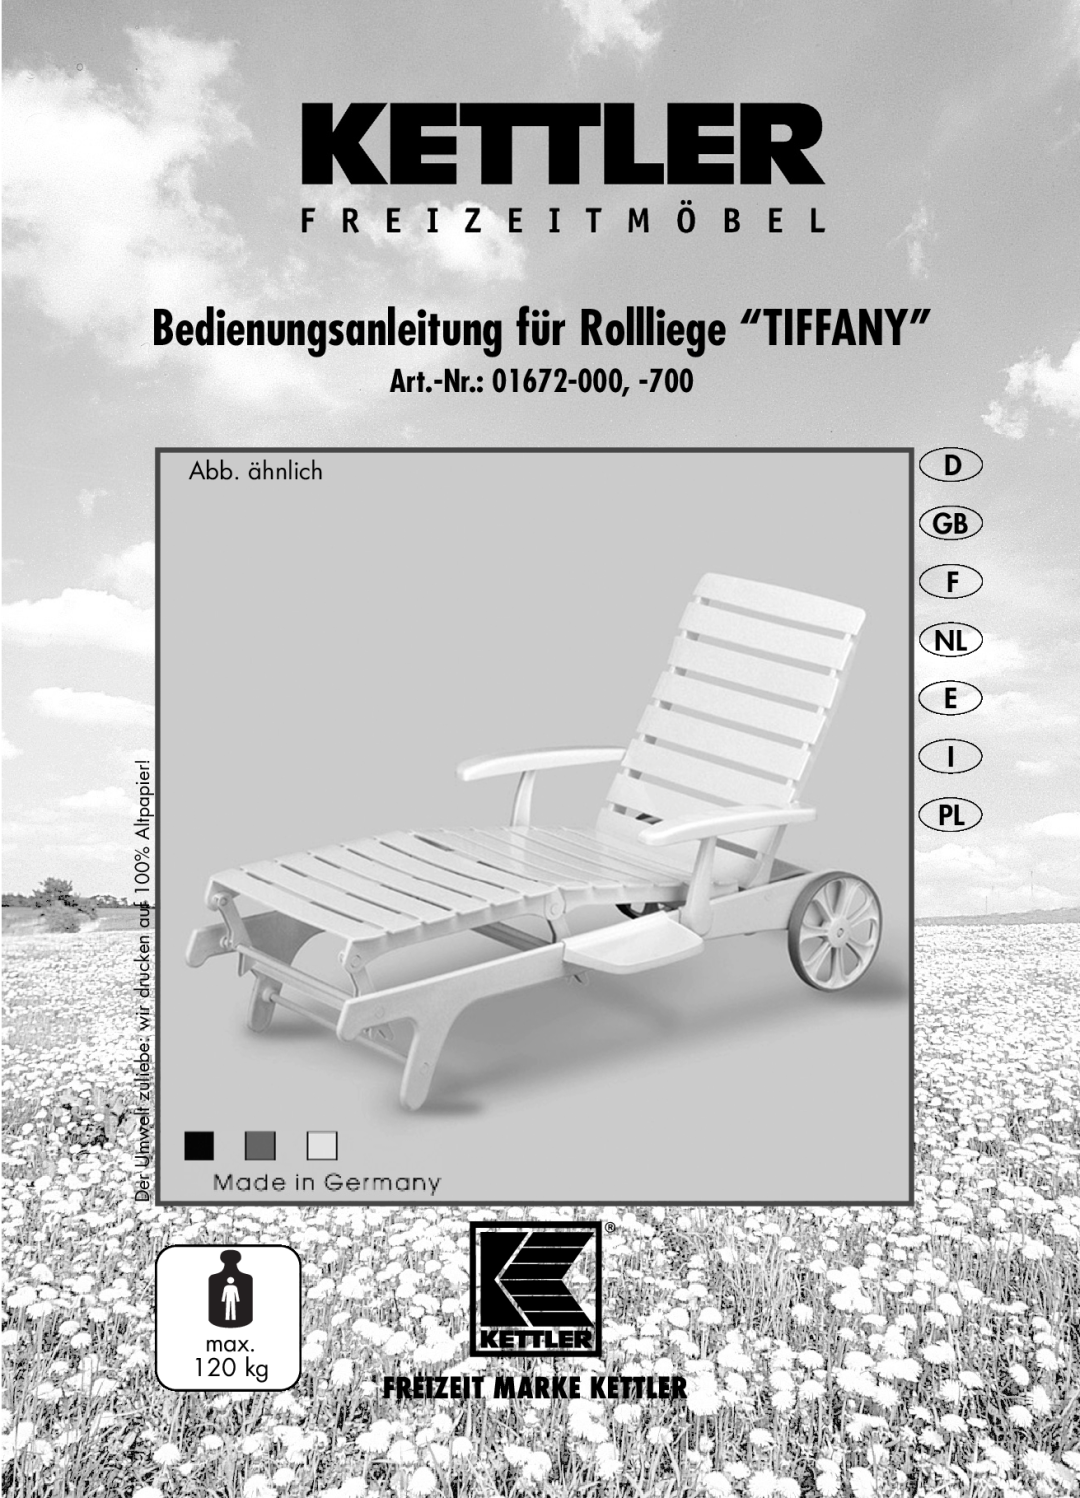 Kettler 01672-700, 01672-000 manual D Gb F Nl E I Pl, Bedienungsanleitung für Rollliege “TIFFANY”, Art.-Nr 